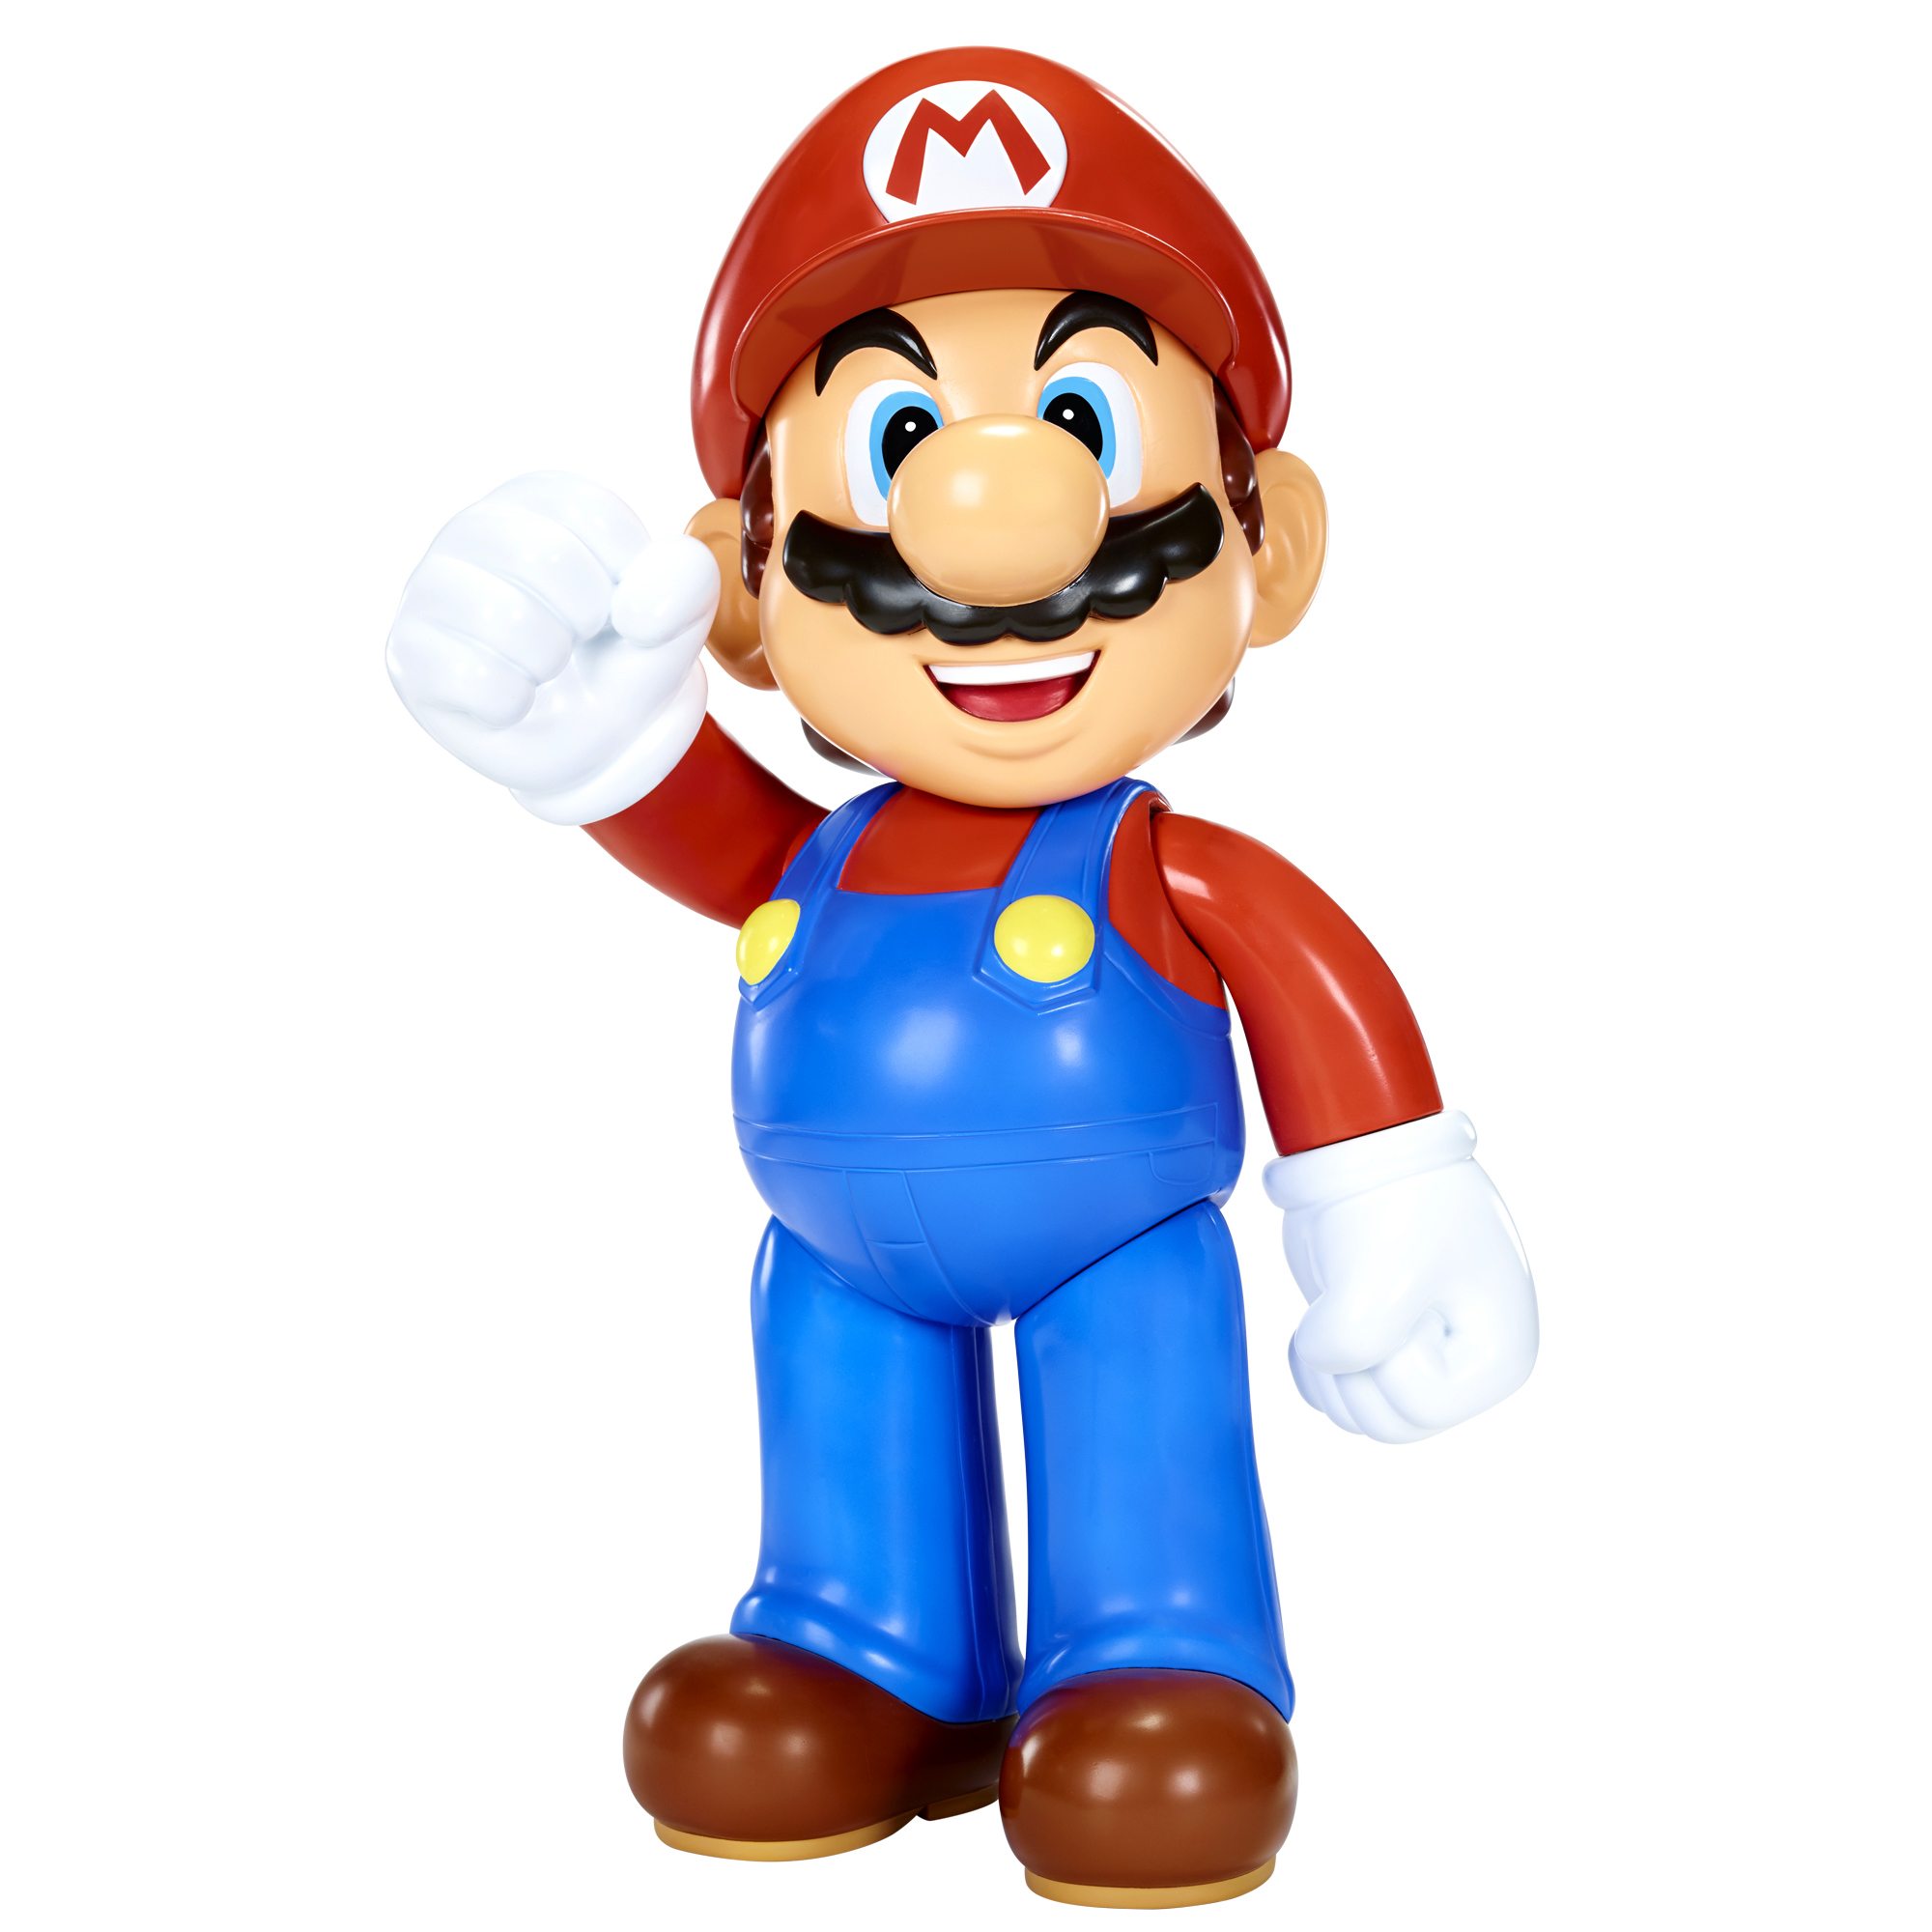 Nintendo super mario big figure wave 1 - NINTENDO, Super Mario